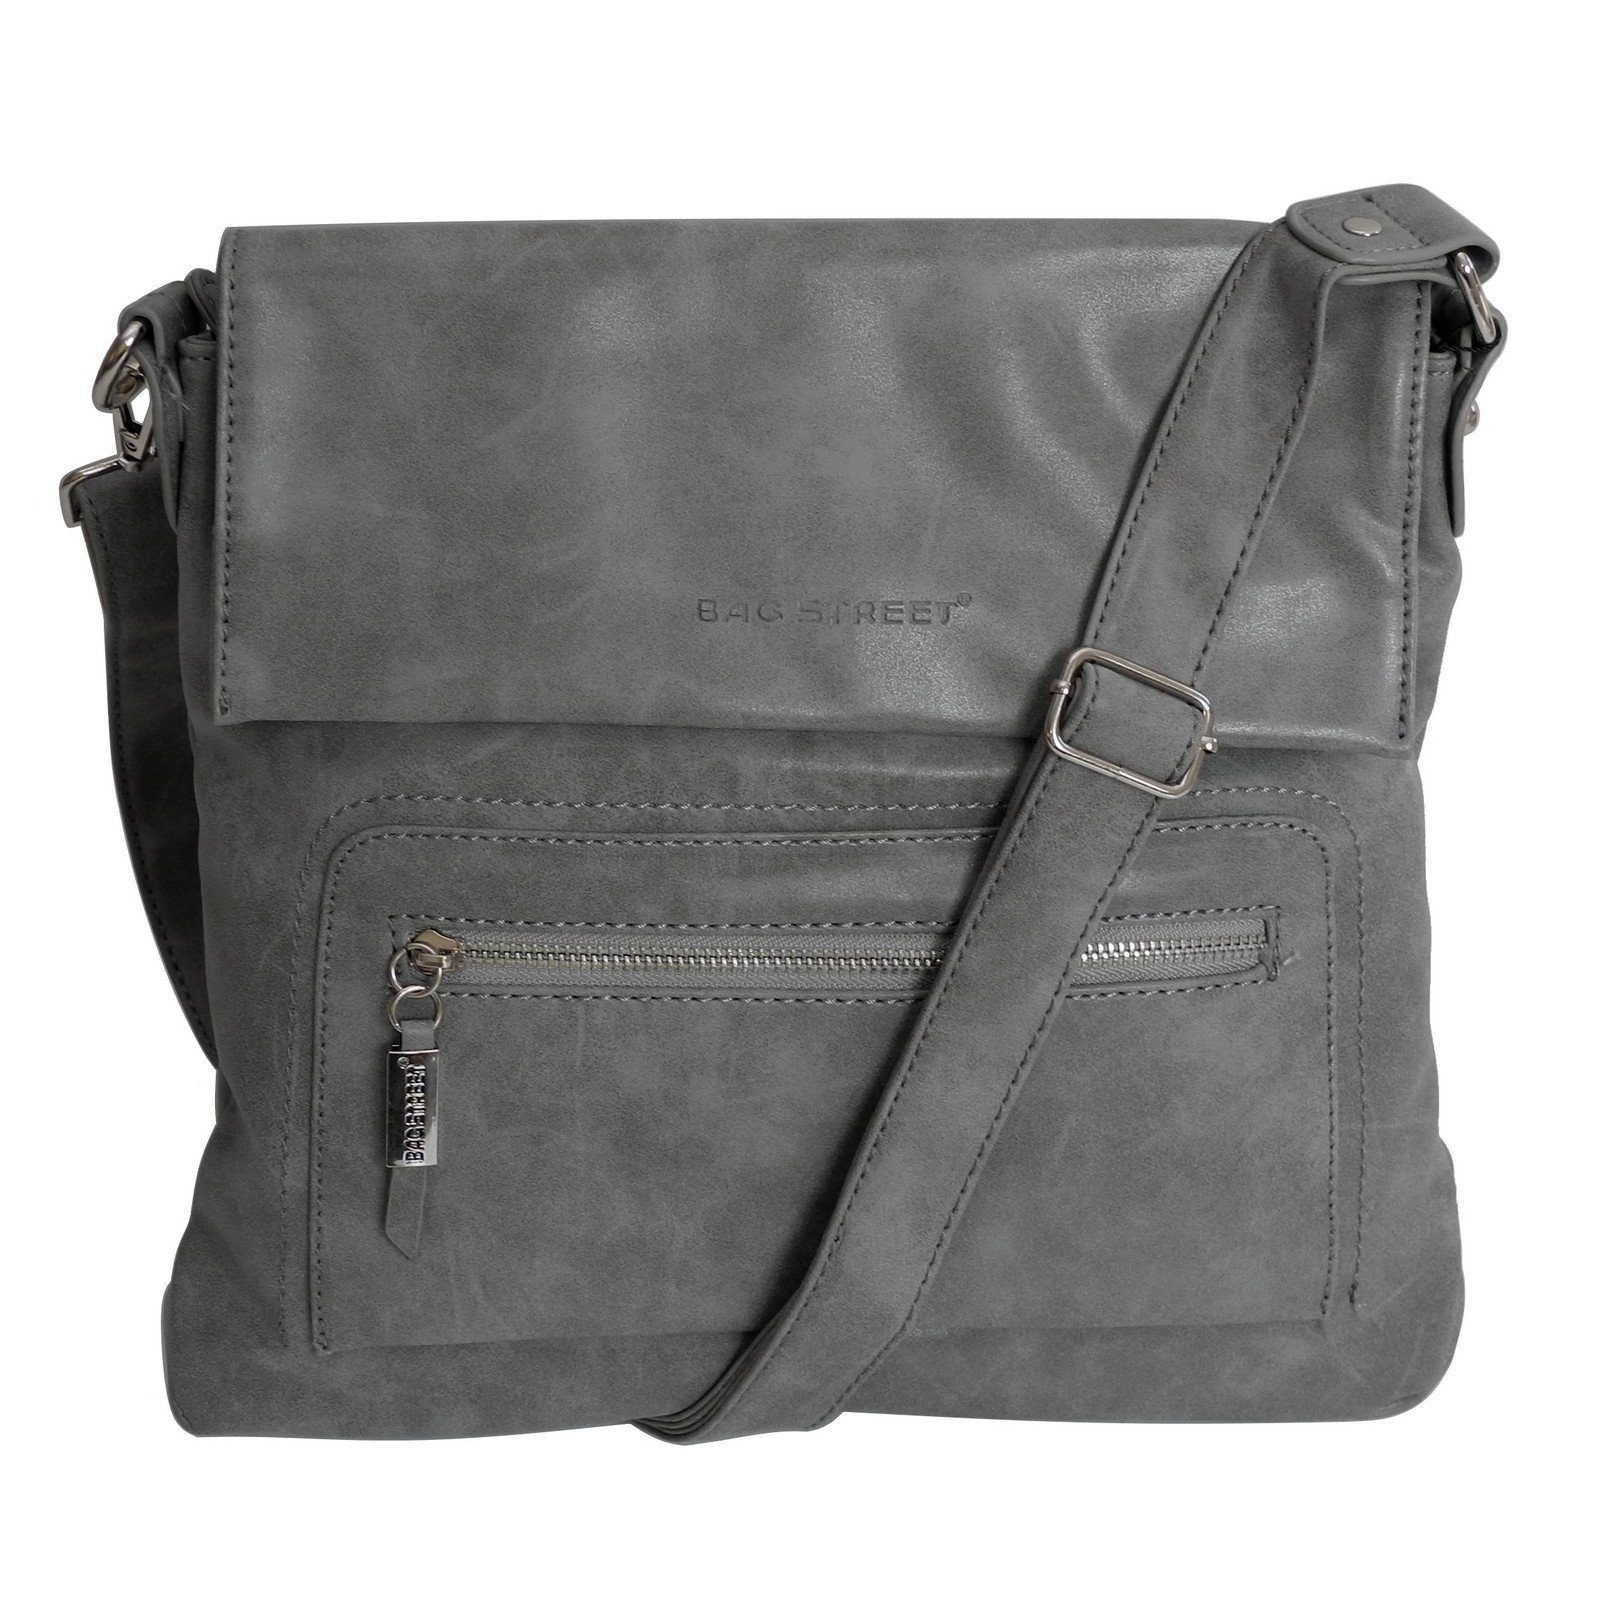 BAG STREET Handtasche Bag Street - Damen Messengerbag Damentasche Umhängetasche Auswahl Grau